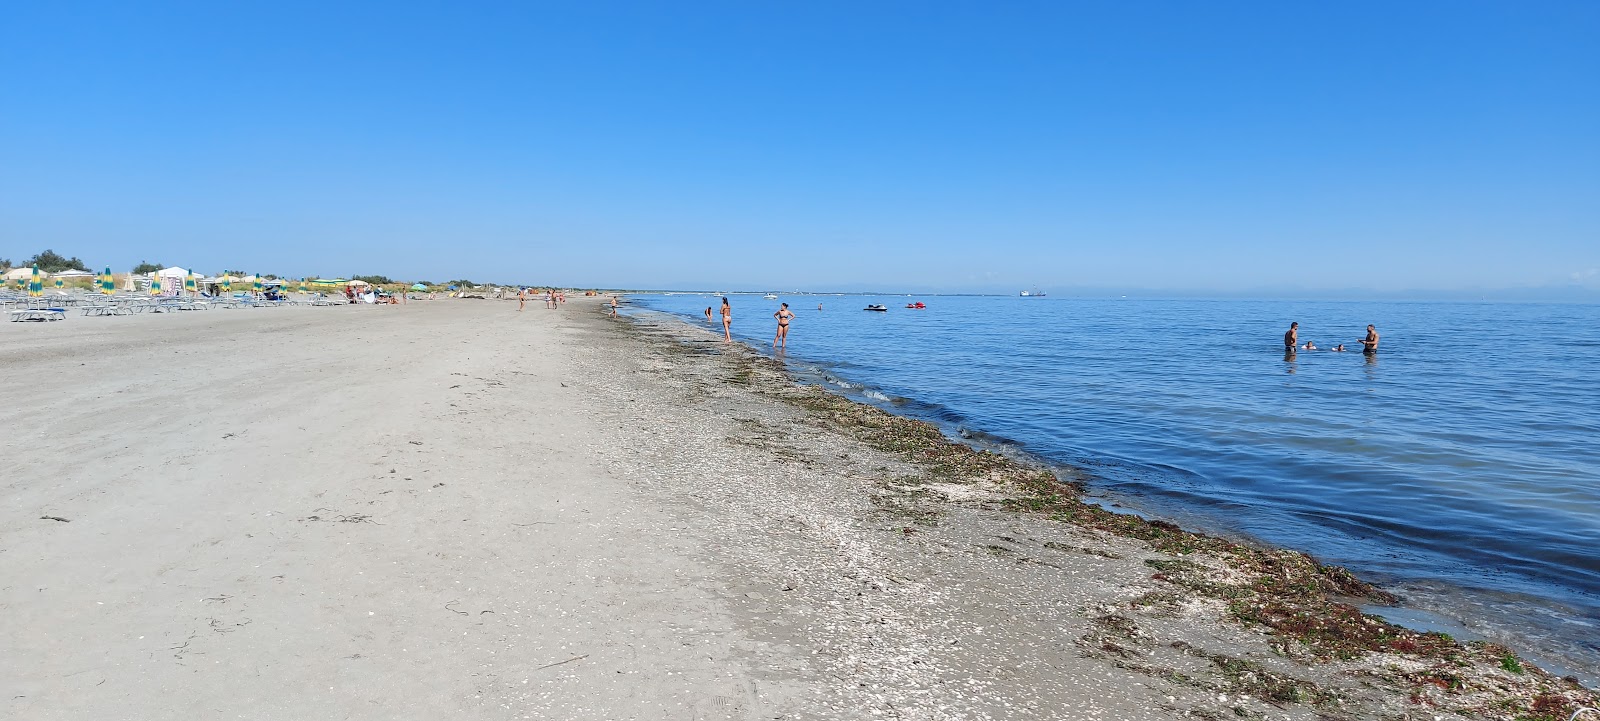 Foto von Spiaggia Scanno Cavallari mit heller sand Oberfläche